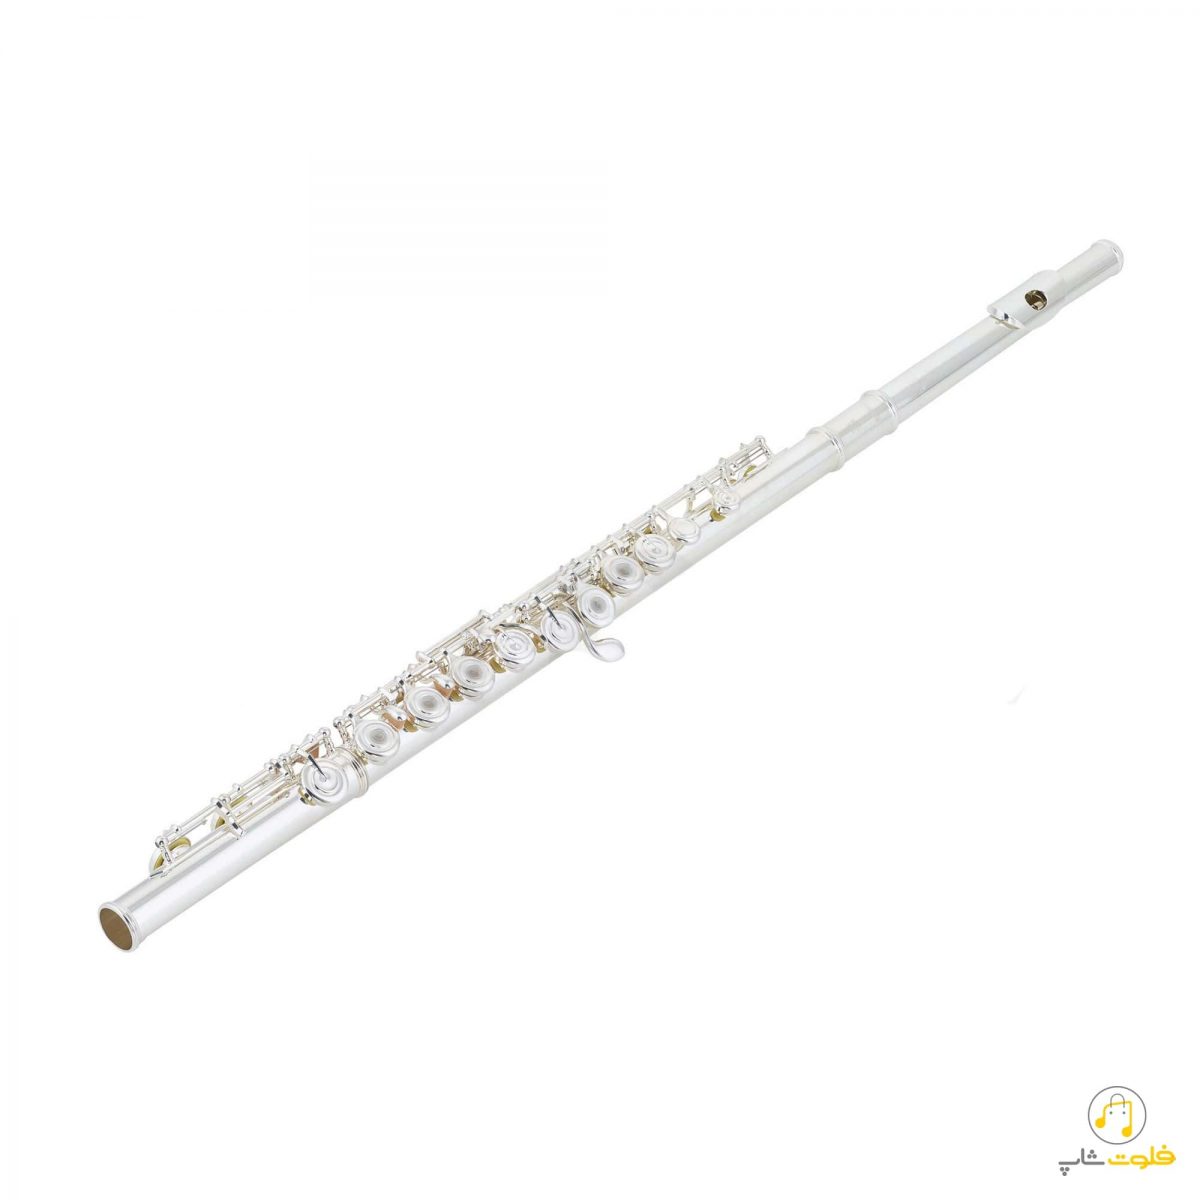 yamaha yfl 372 flute